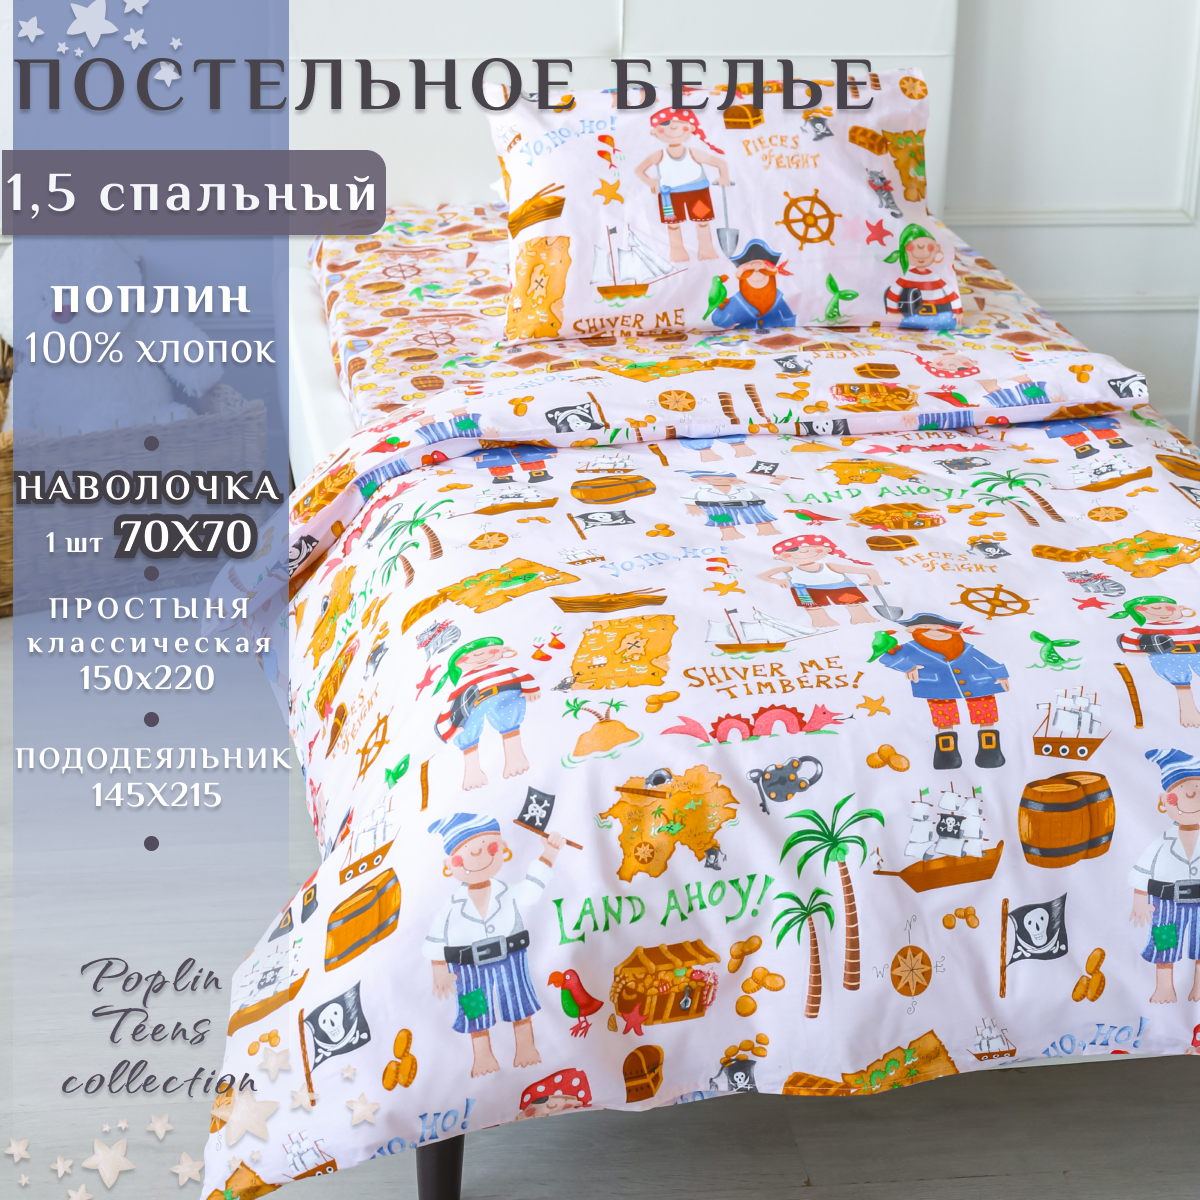 Детский комплект постельного белья LIMETIME Поплин, 1,5 спальный, наволочка 70х70